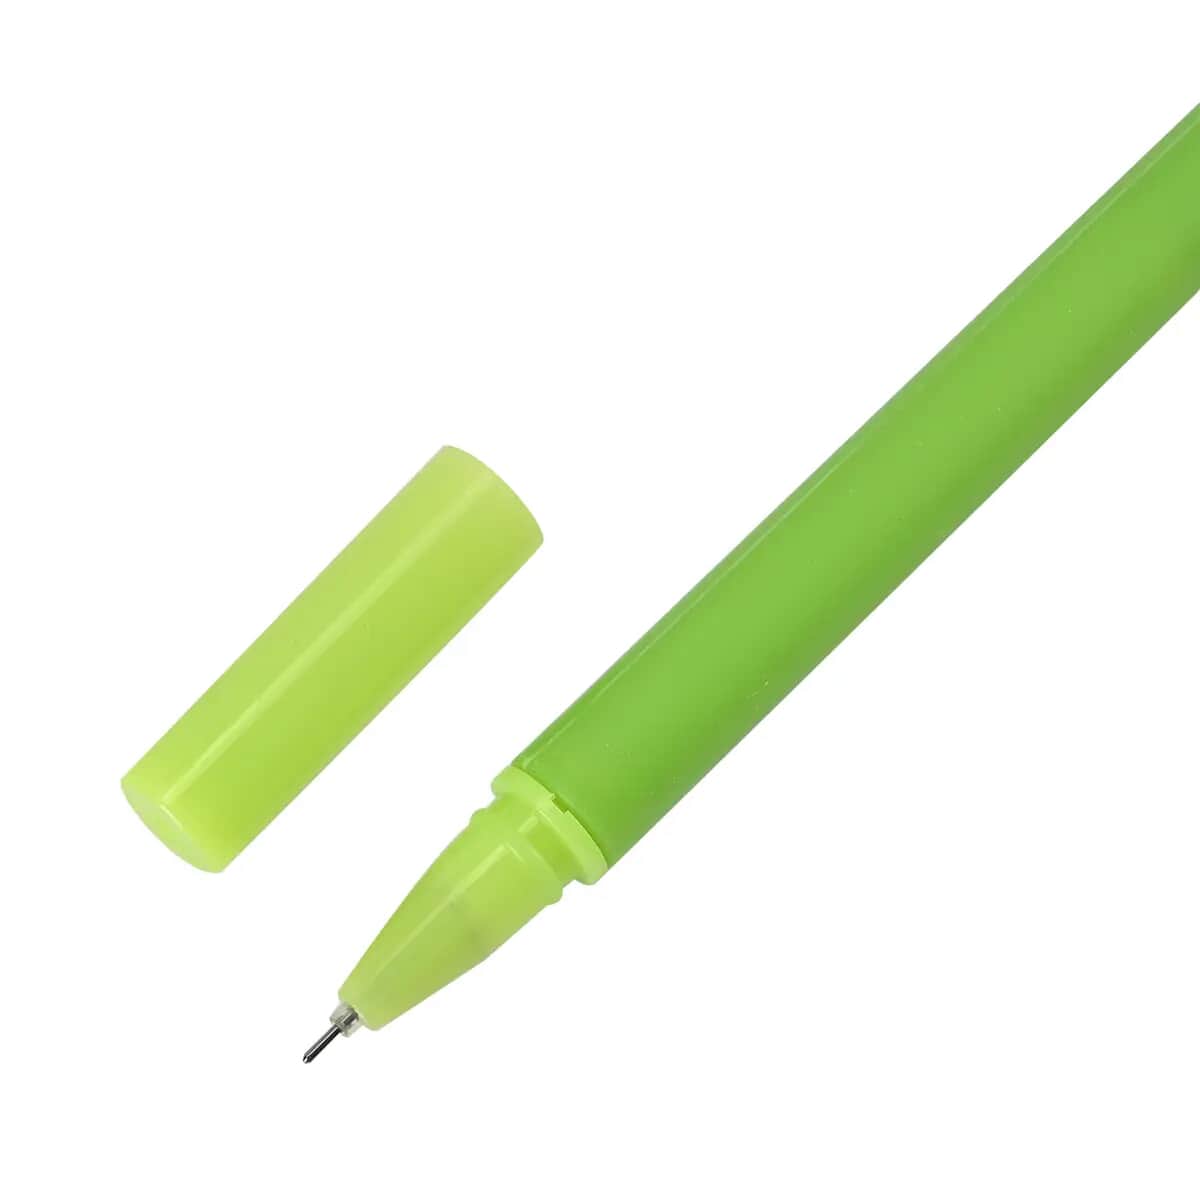 BOW PEN, Bowknot Pen, Pink Pen, Lavender Pen, Mint Pen, Champagne Pen, Fine  Point, Journal Pen, Planner Pens, Black Ink Pen, Decorative Pen 